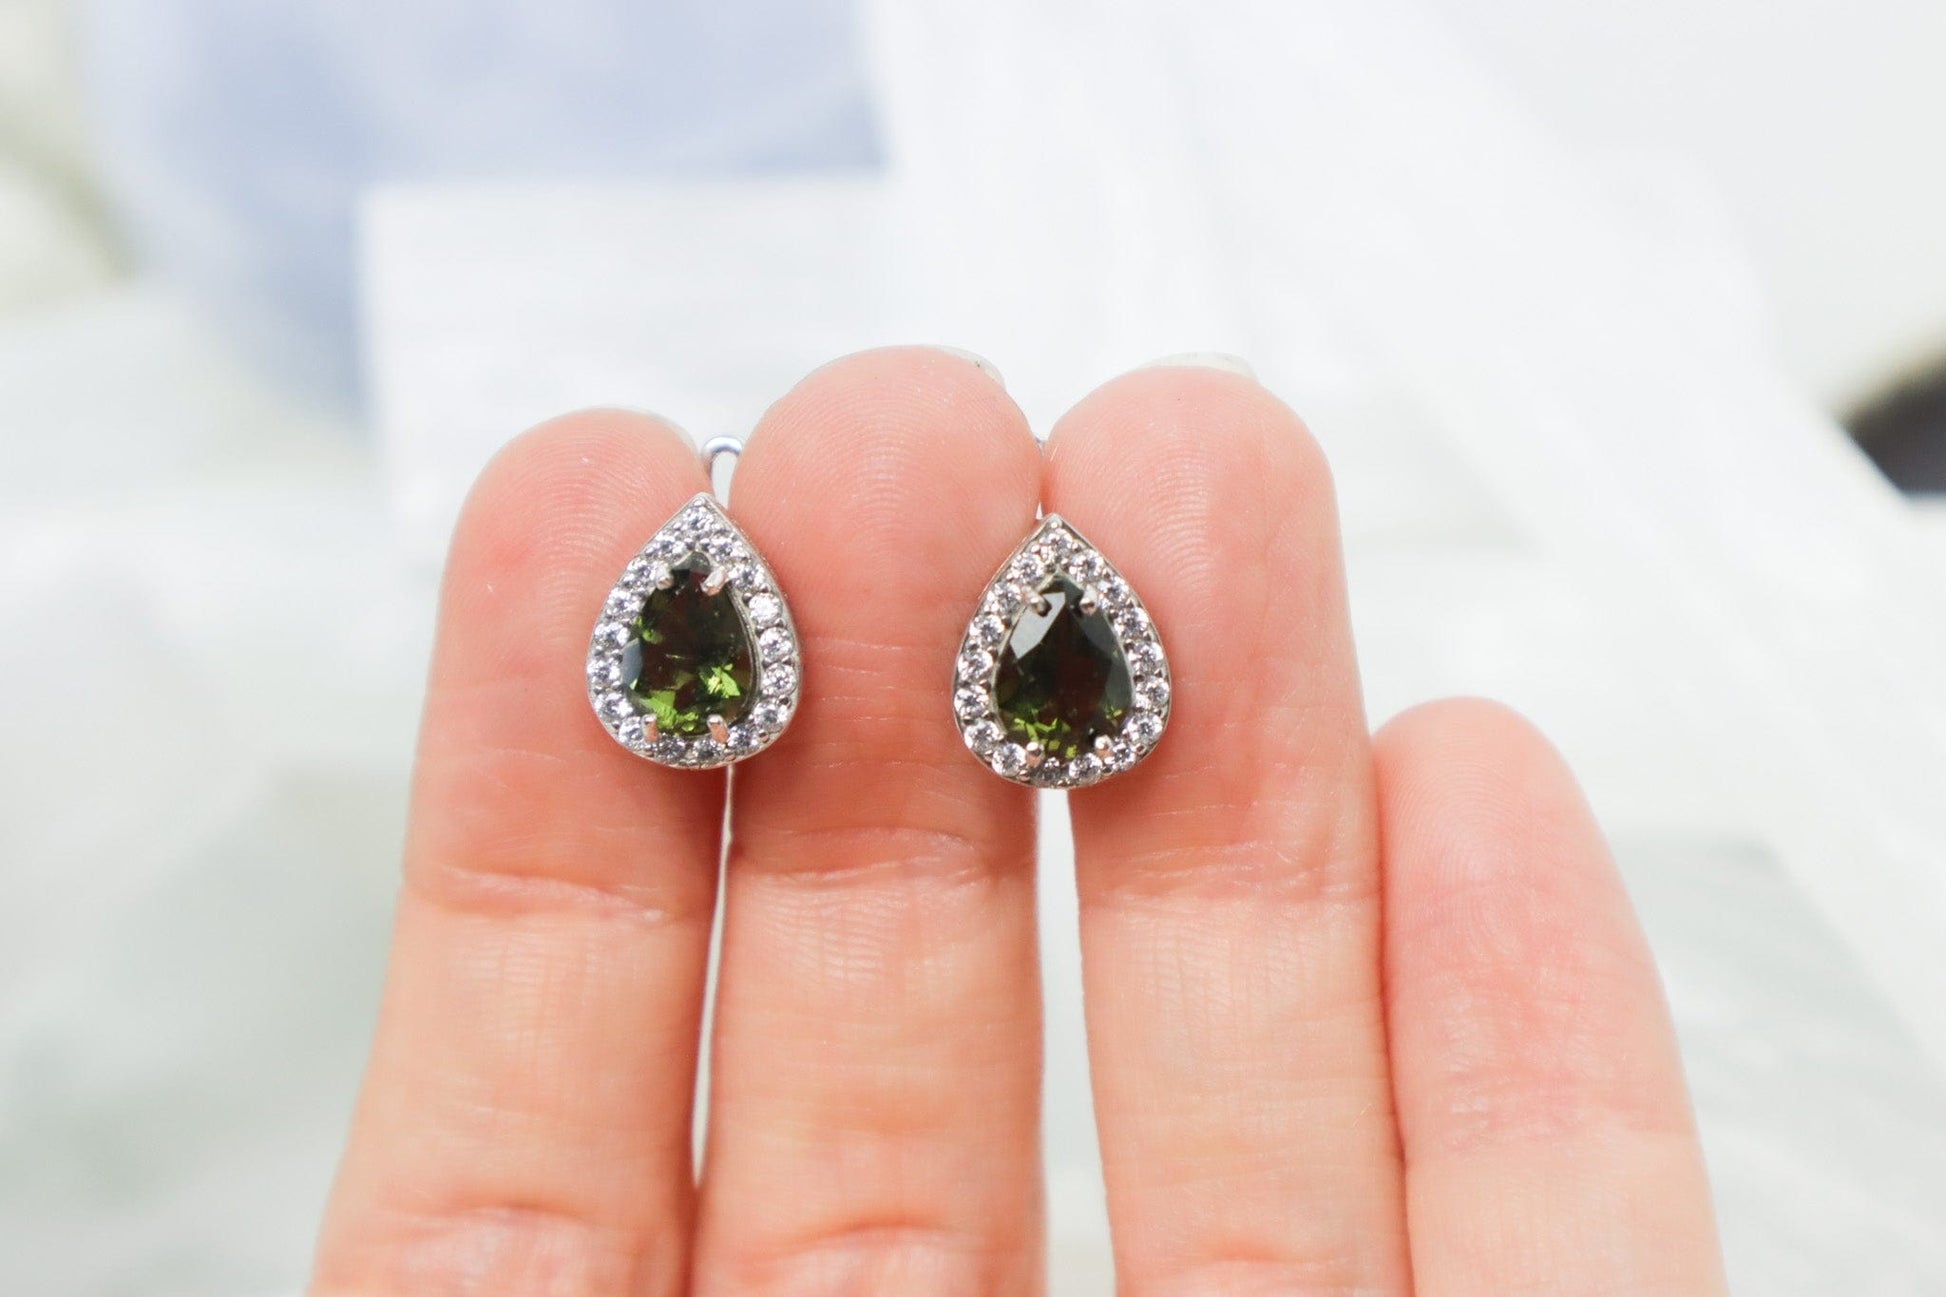 Moldavite Earrings 'Stella' - The Stone of Transformation Earrings Tali & Loz